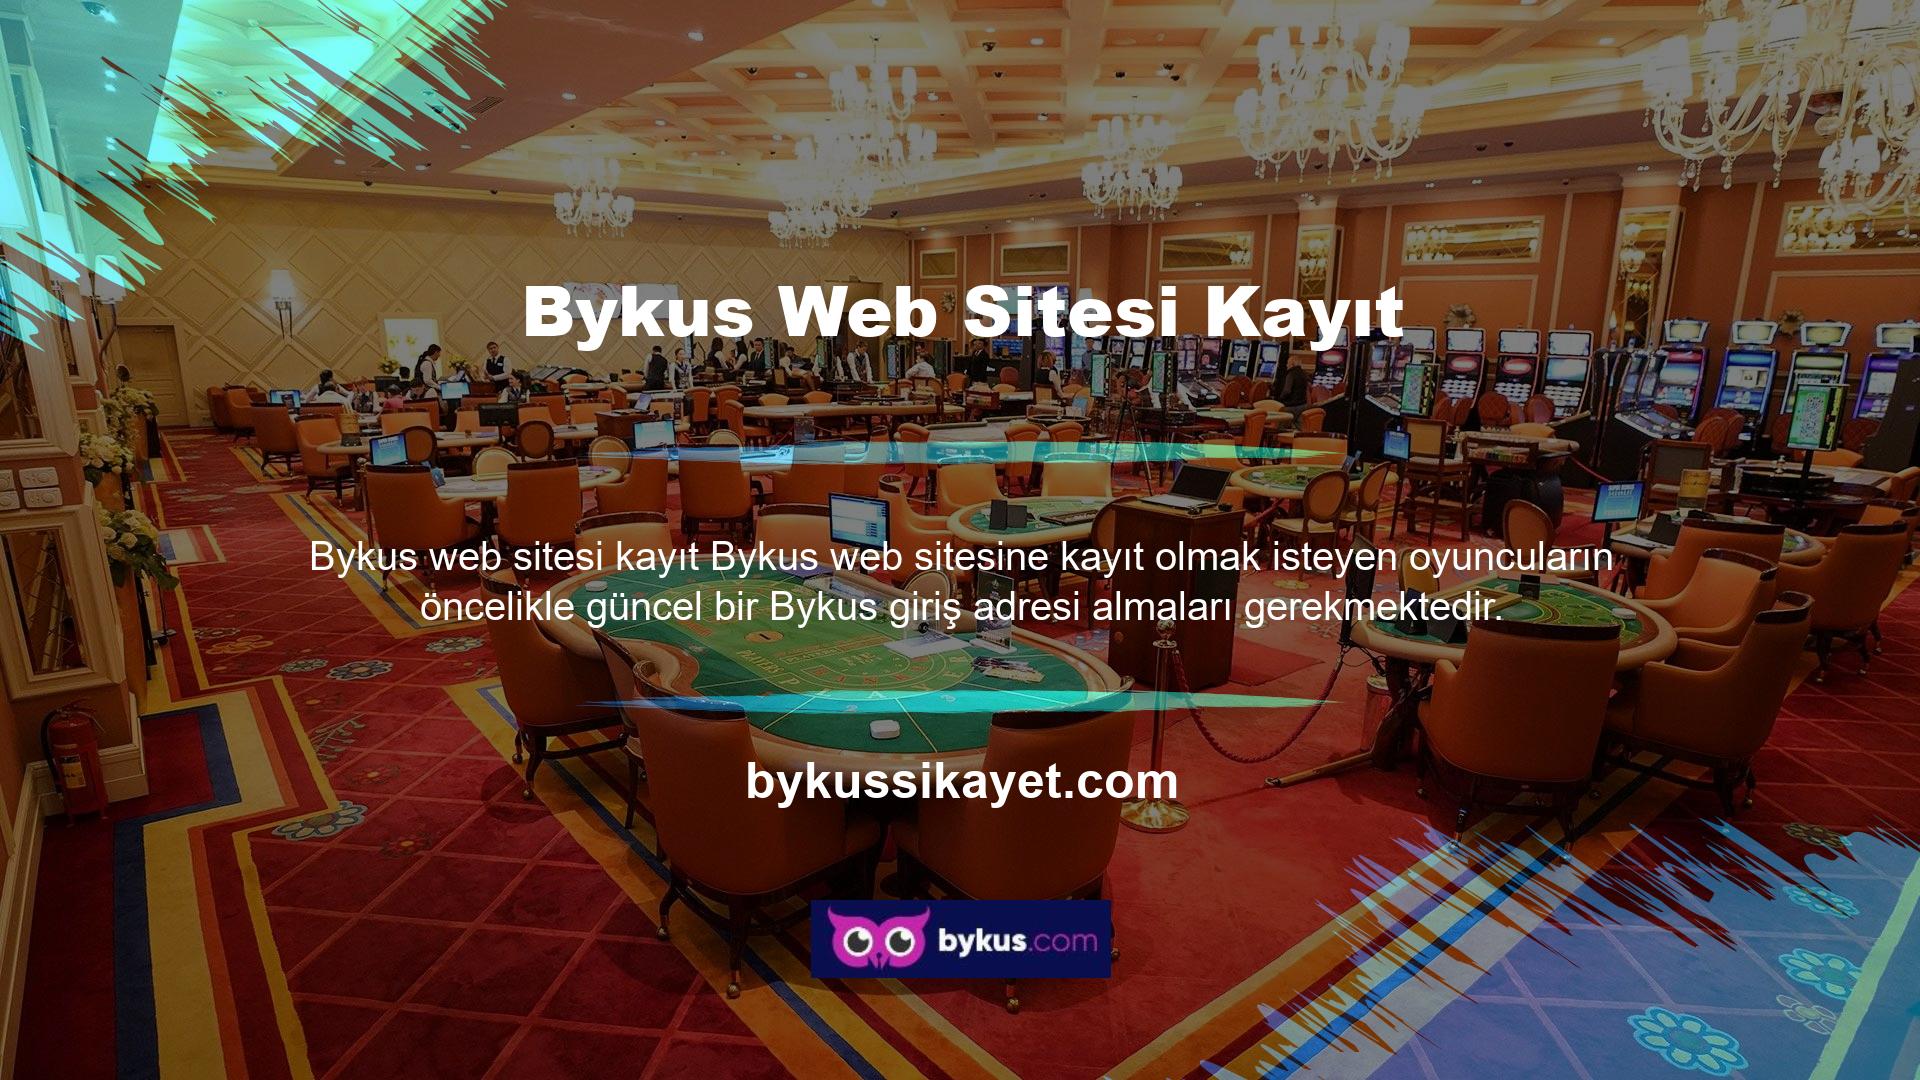 Online casino siteleri Türkiye'de yasal olarak işletilmemektedir ve site kullanıcılarının ve sitenin güvenliğini sağlamak amacıyla adresler zaman zaman değişebilir